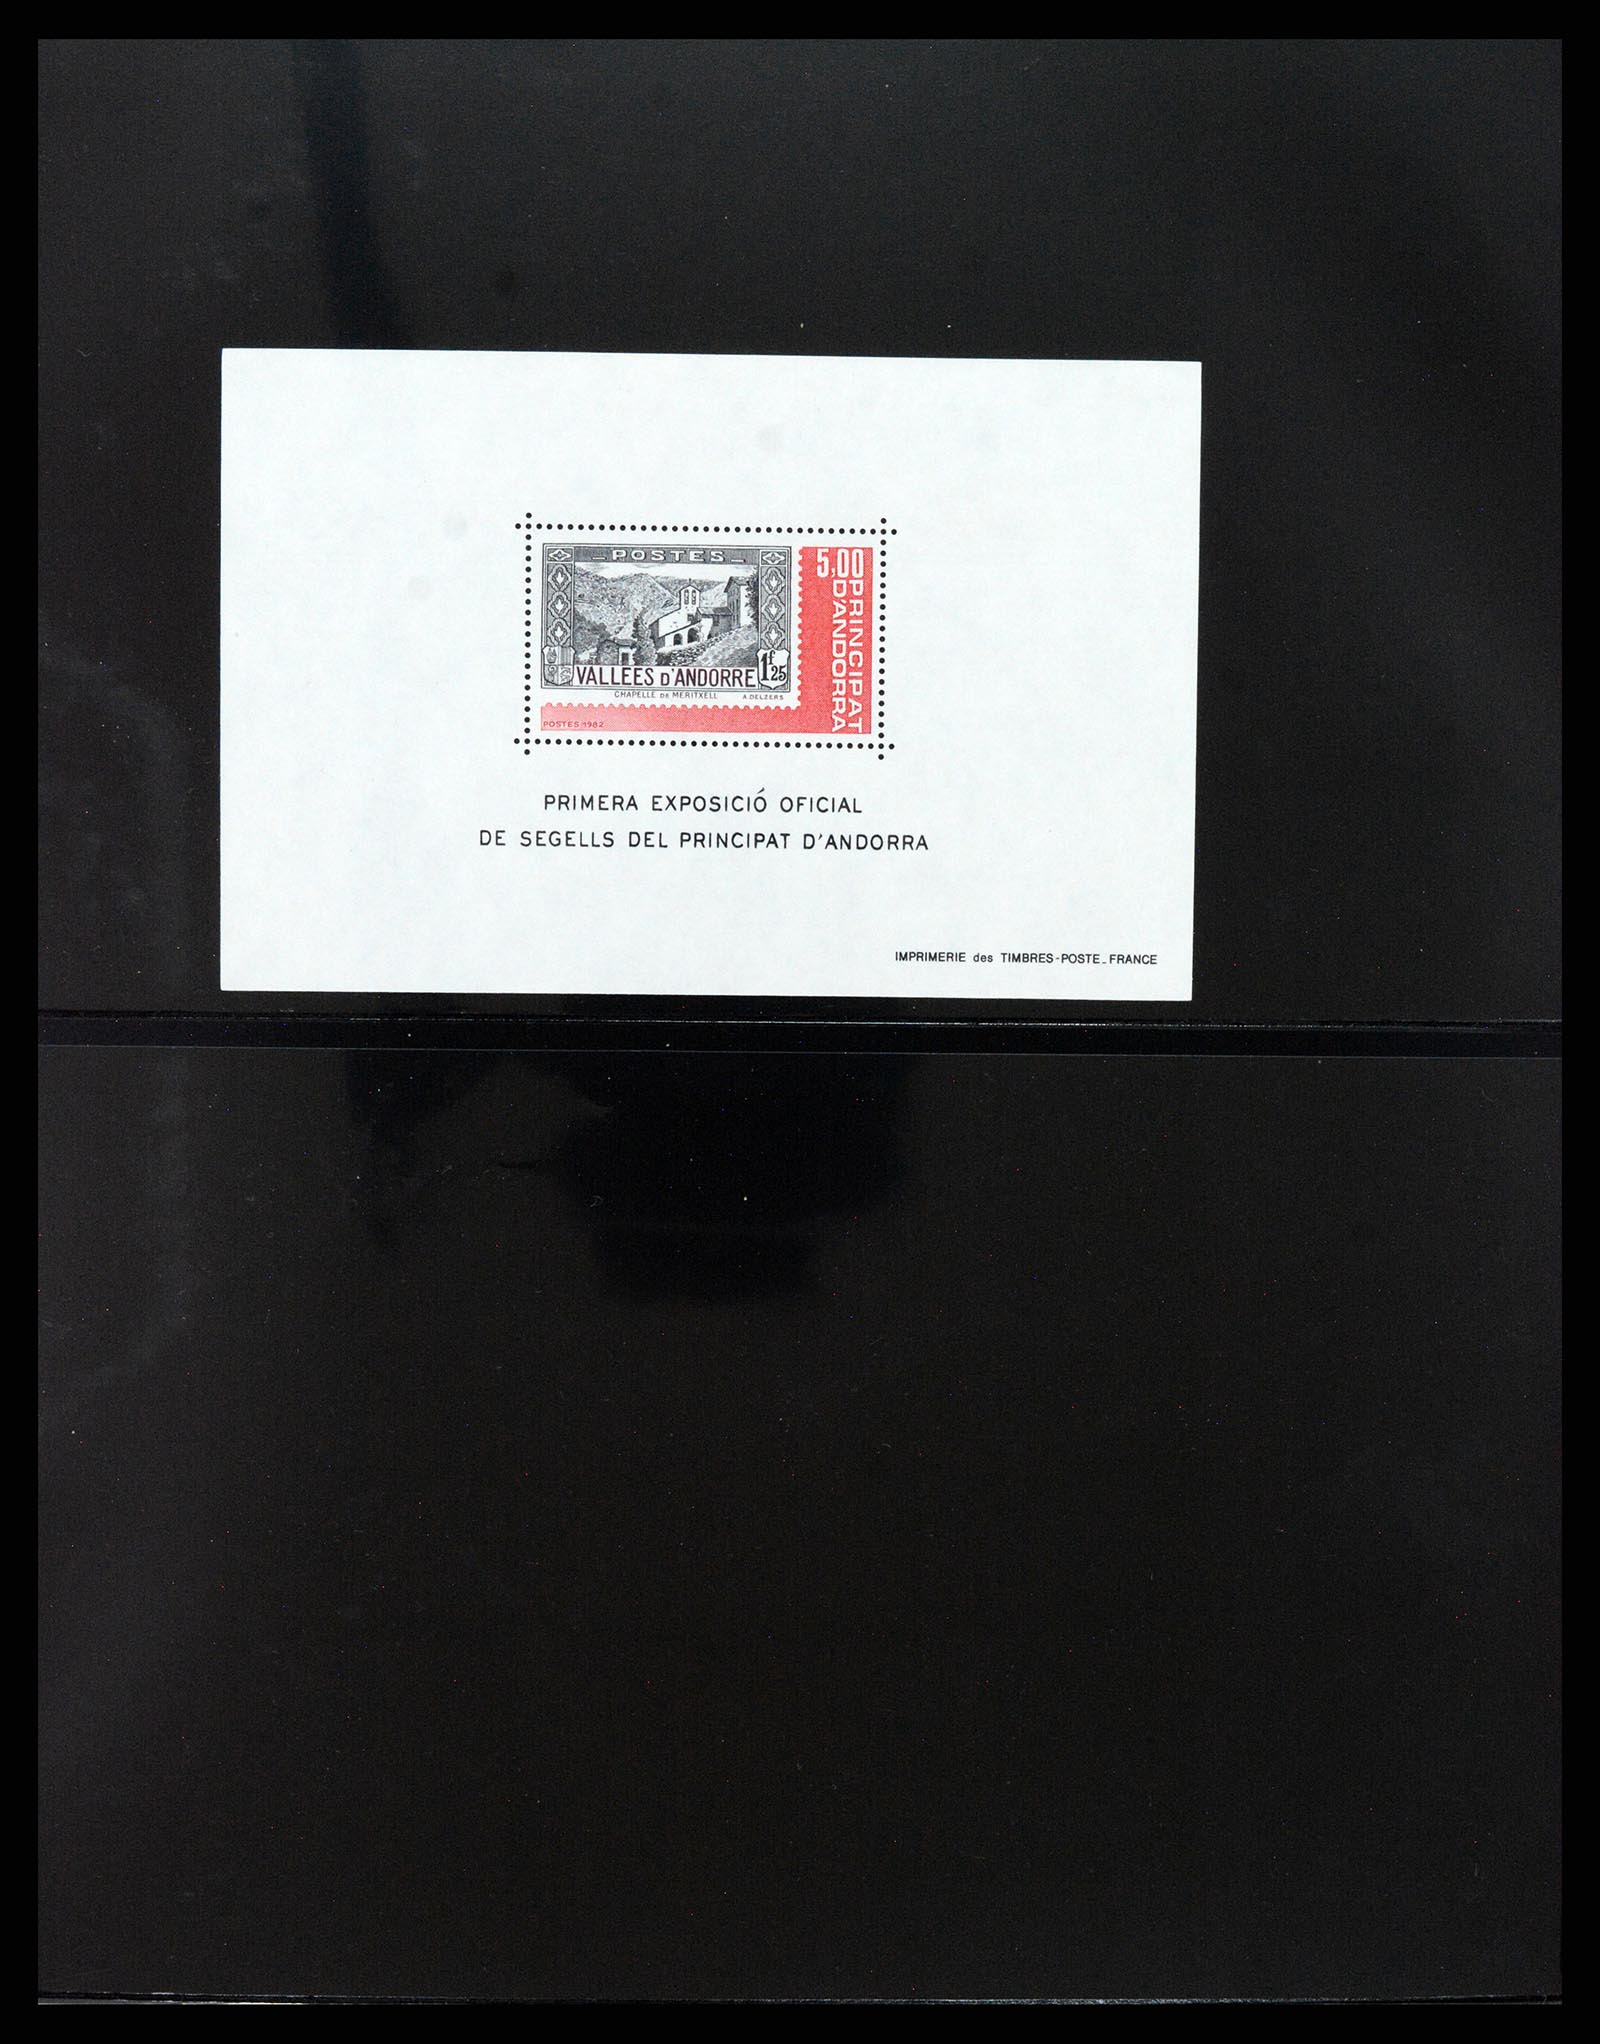 37345 001 - Stamp collection 37345 European countries souvenir sheets.